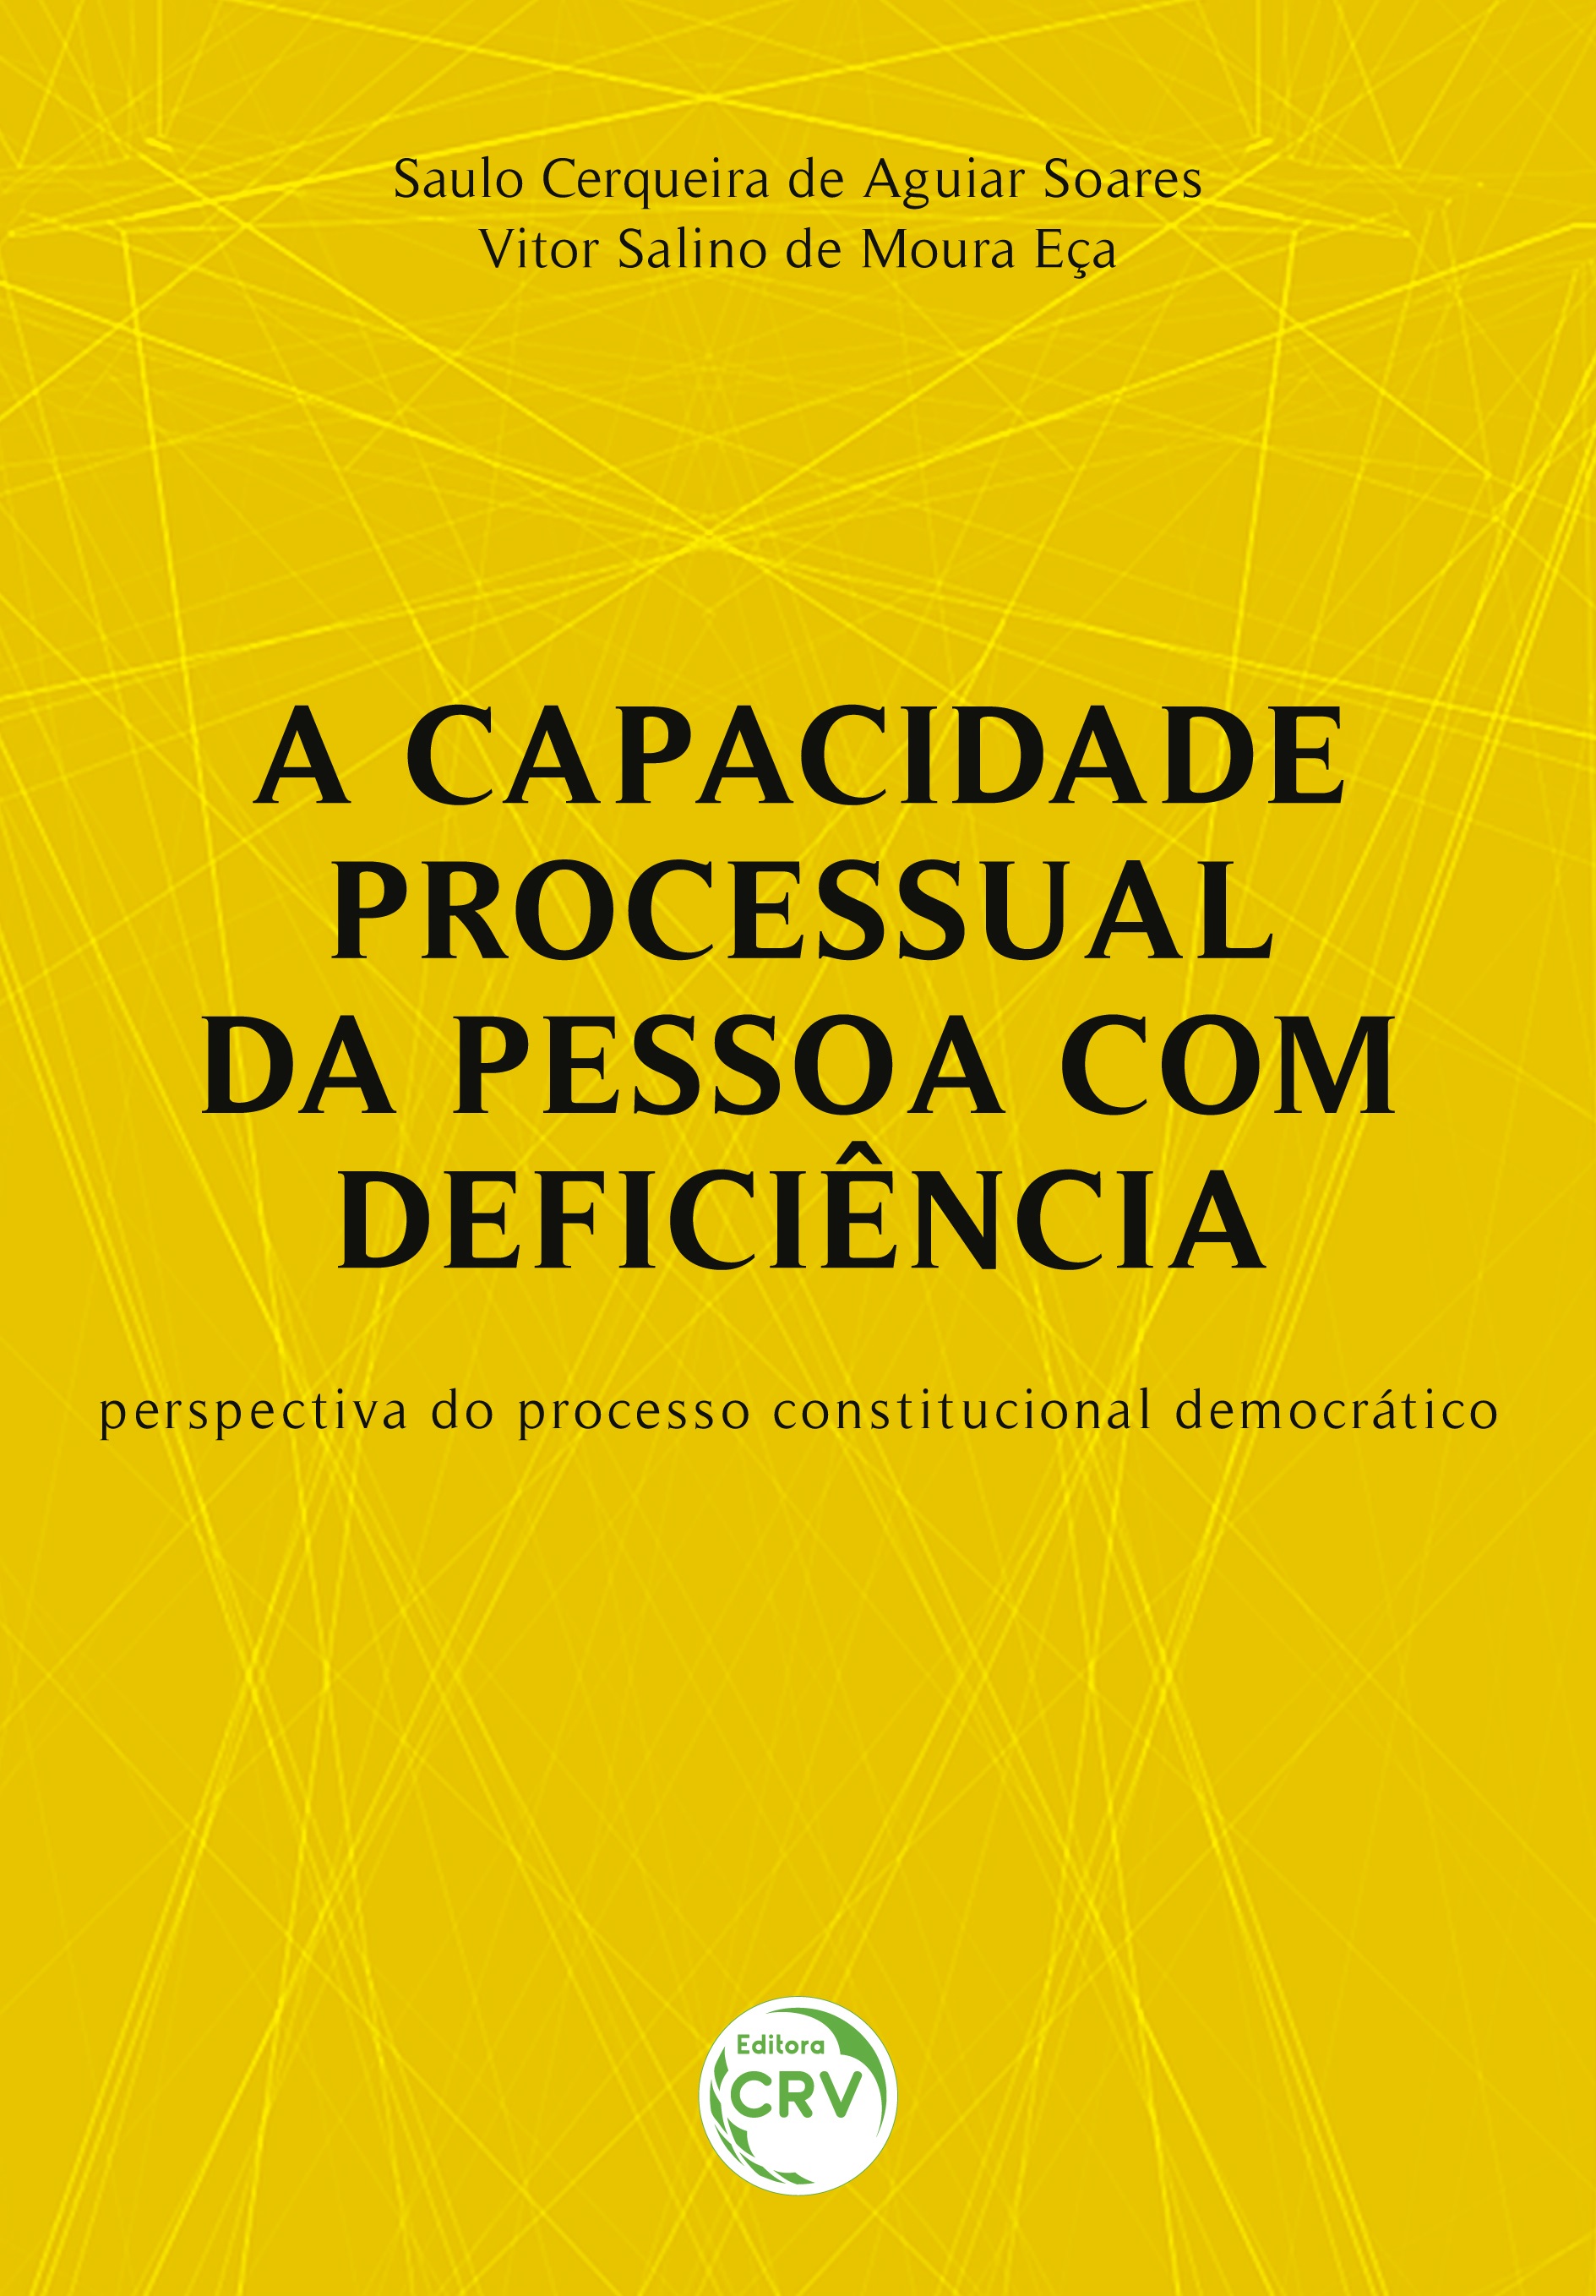 Capa do livro: A CAPACIDADE PROCESSUAL DA PESSOA COM DEFICIÊNCIA:<br>perspectiva do processo constitucional democrático